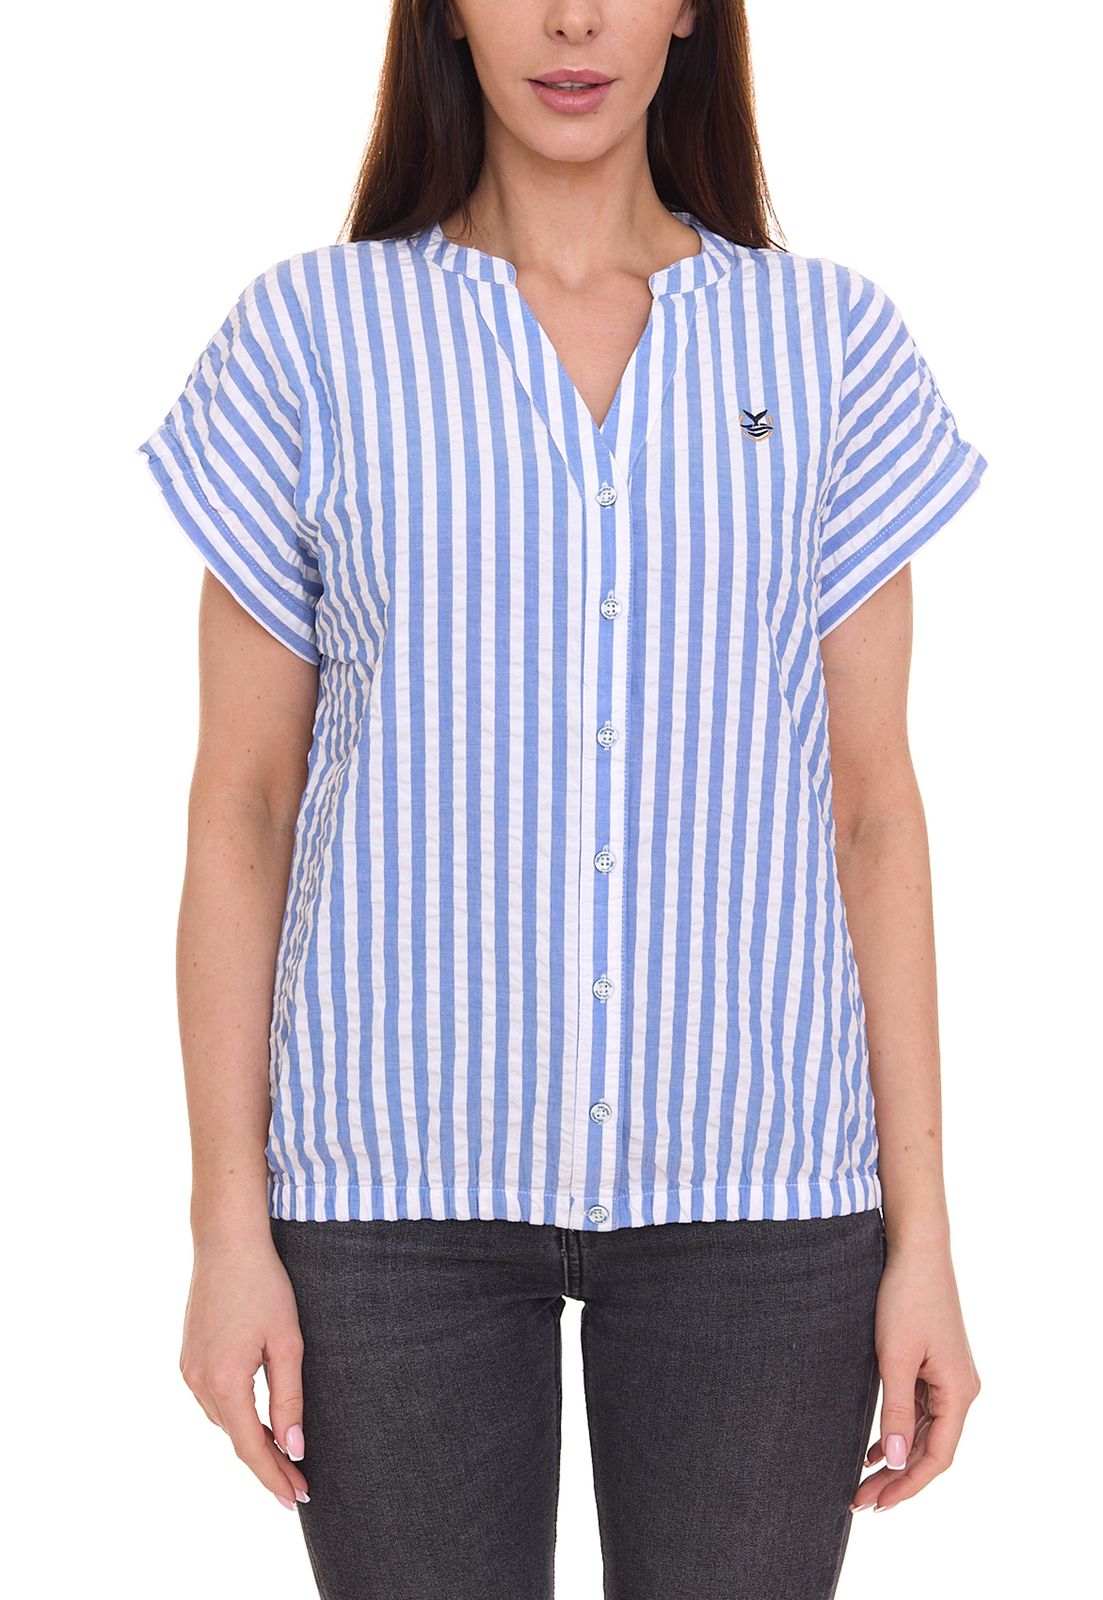 DELMAO Damen Sommer-Bluse gestreift Kurzarm-Bluse Sommer-Shirt 64287360 Blau/Weiß von DELMAO